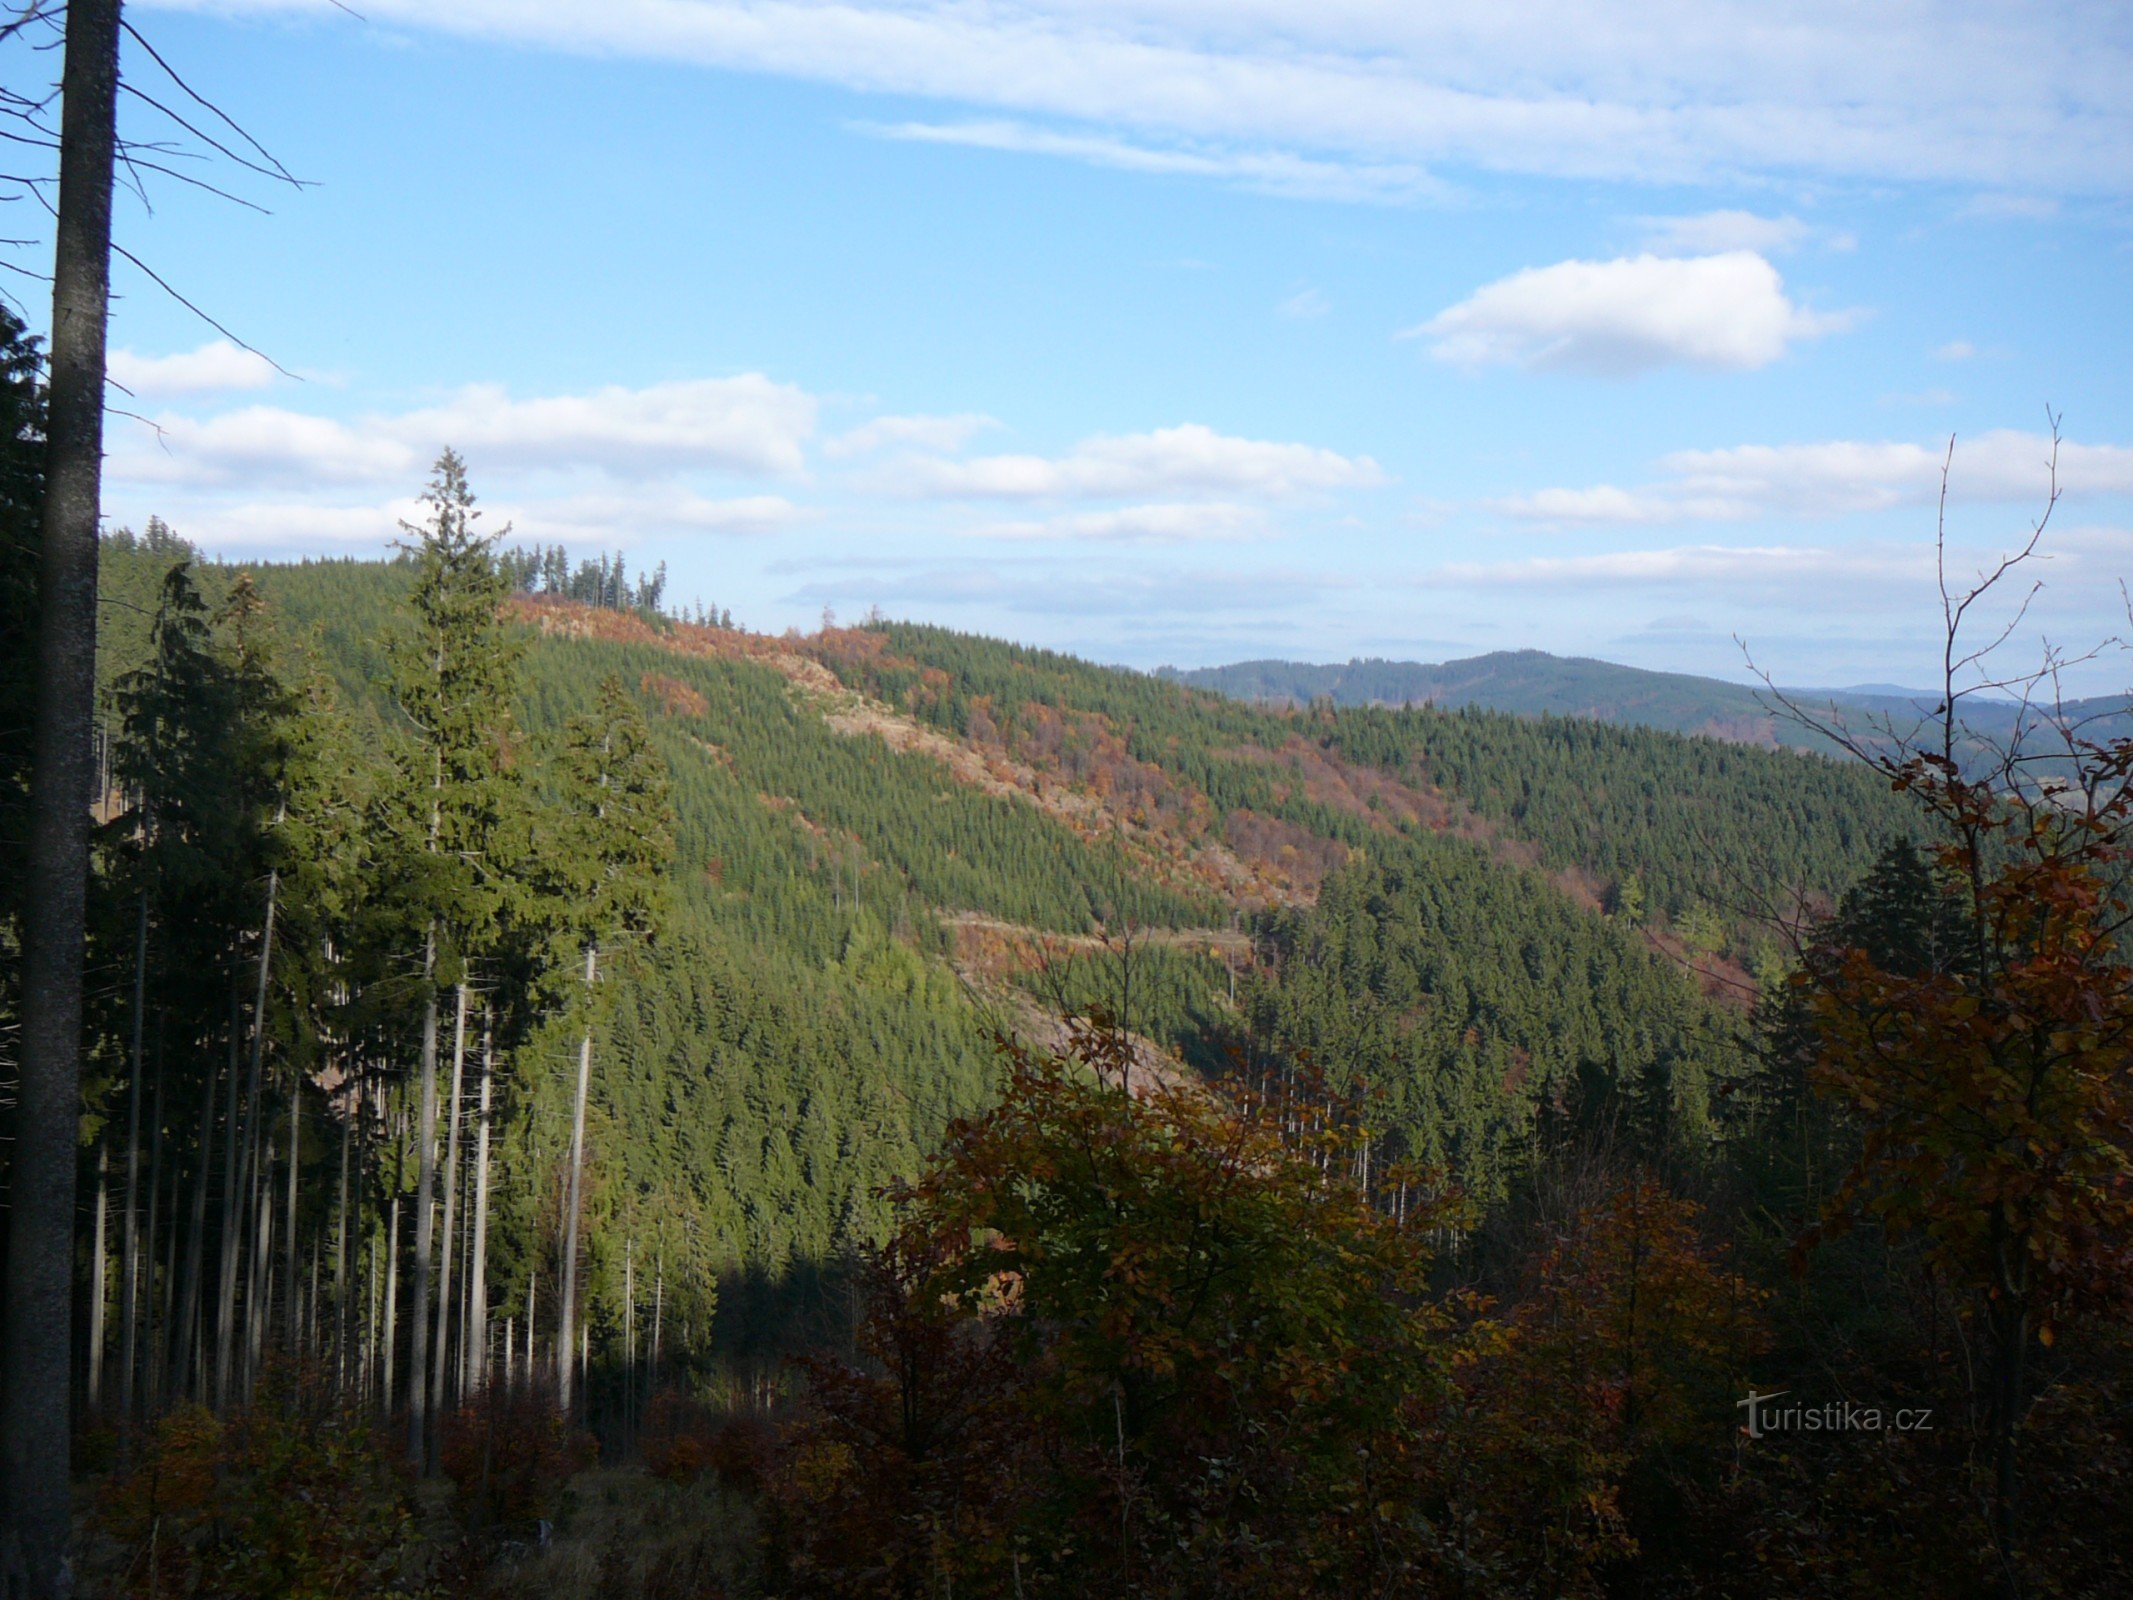 Kyčerová, Hrachovicný les și în spatele lui Těšíňoky